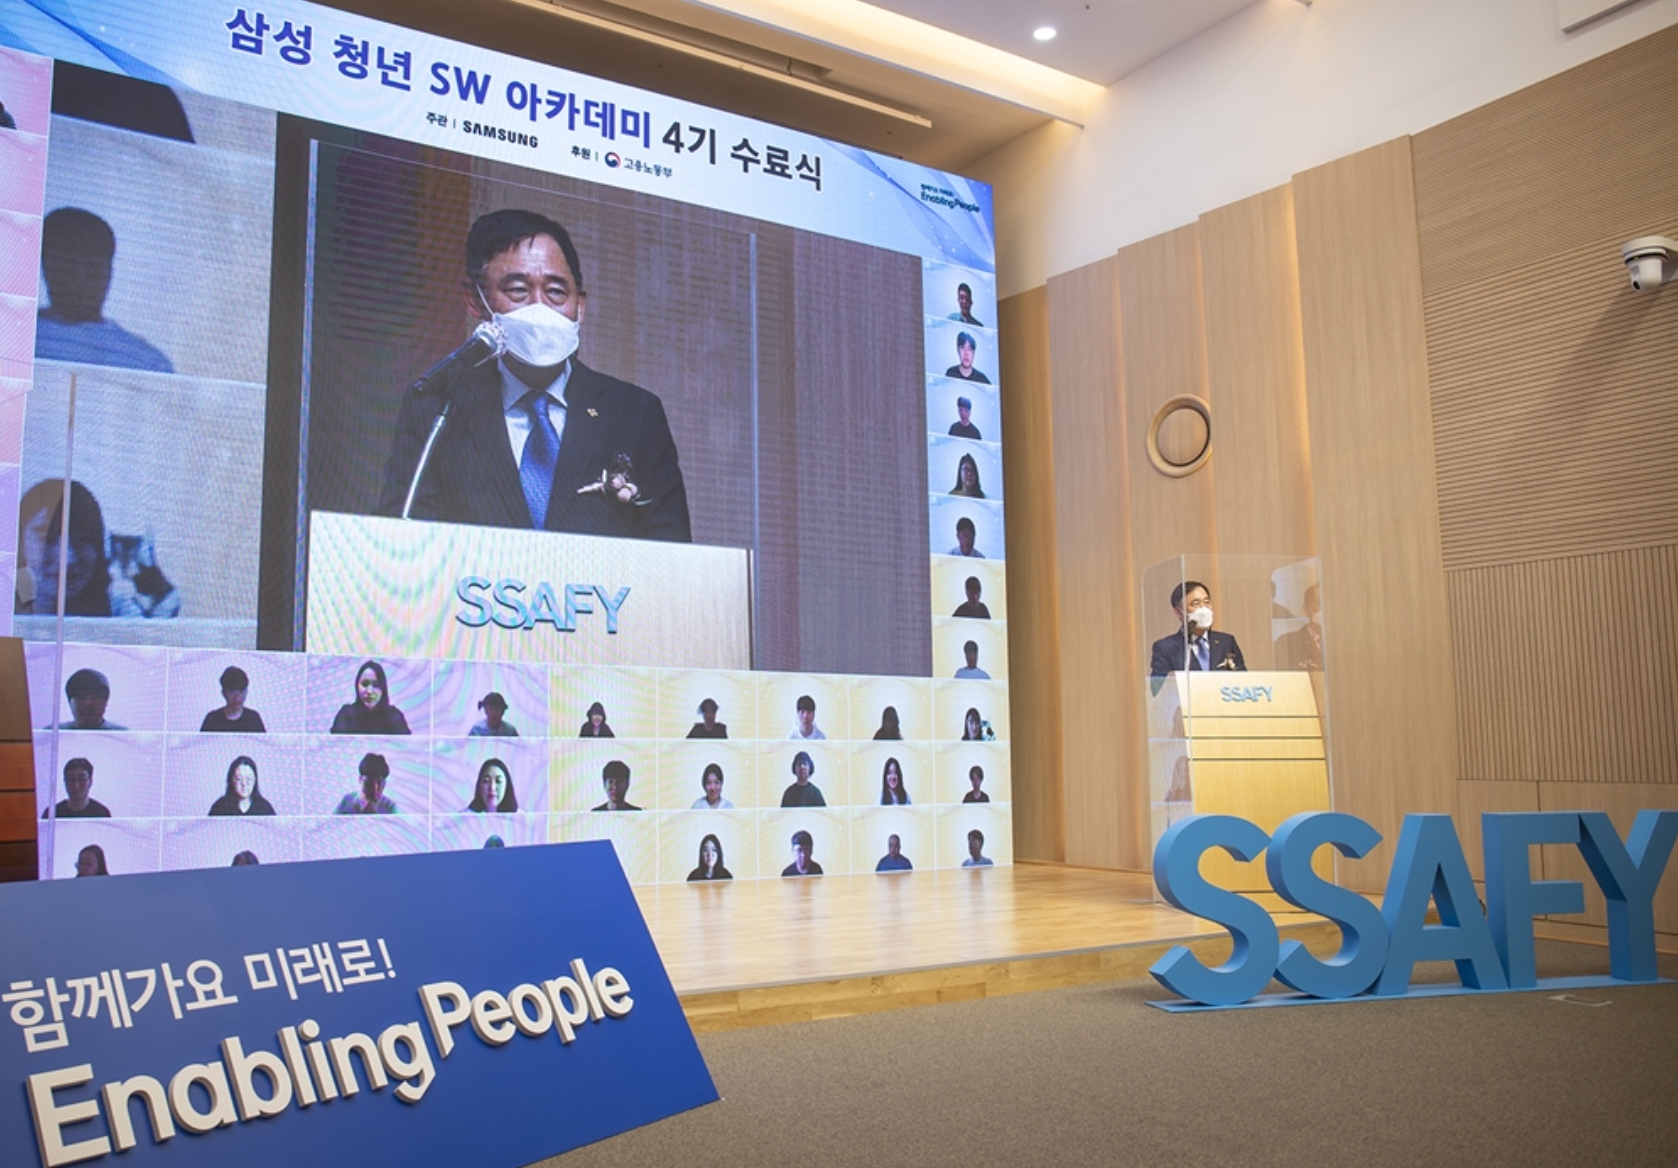 9일 서울 강남구 멀티캠퍼스 교육센터에서 열린 ‘삼성청년SW아카데미’ 4기 수료식에 참석한 고용노동부 박화진 차관이 축사를 하고 있다.